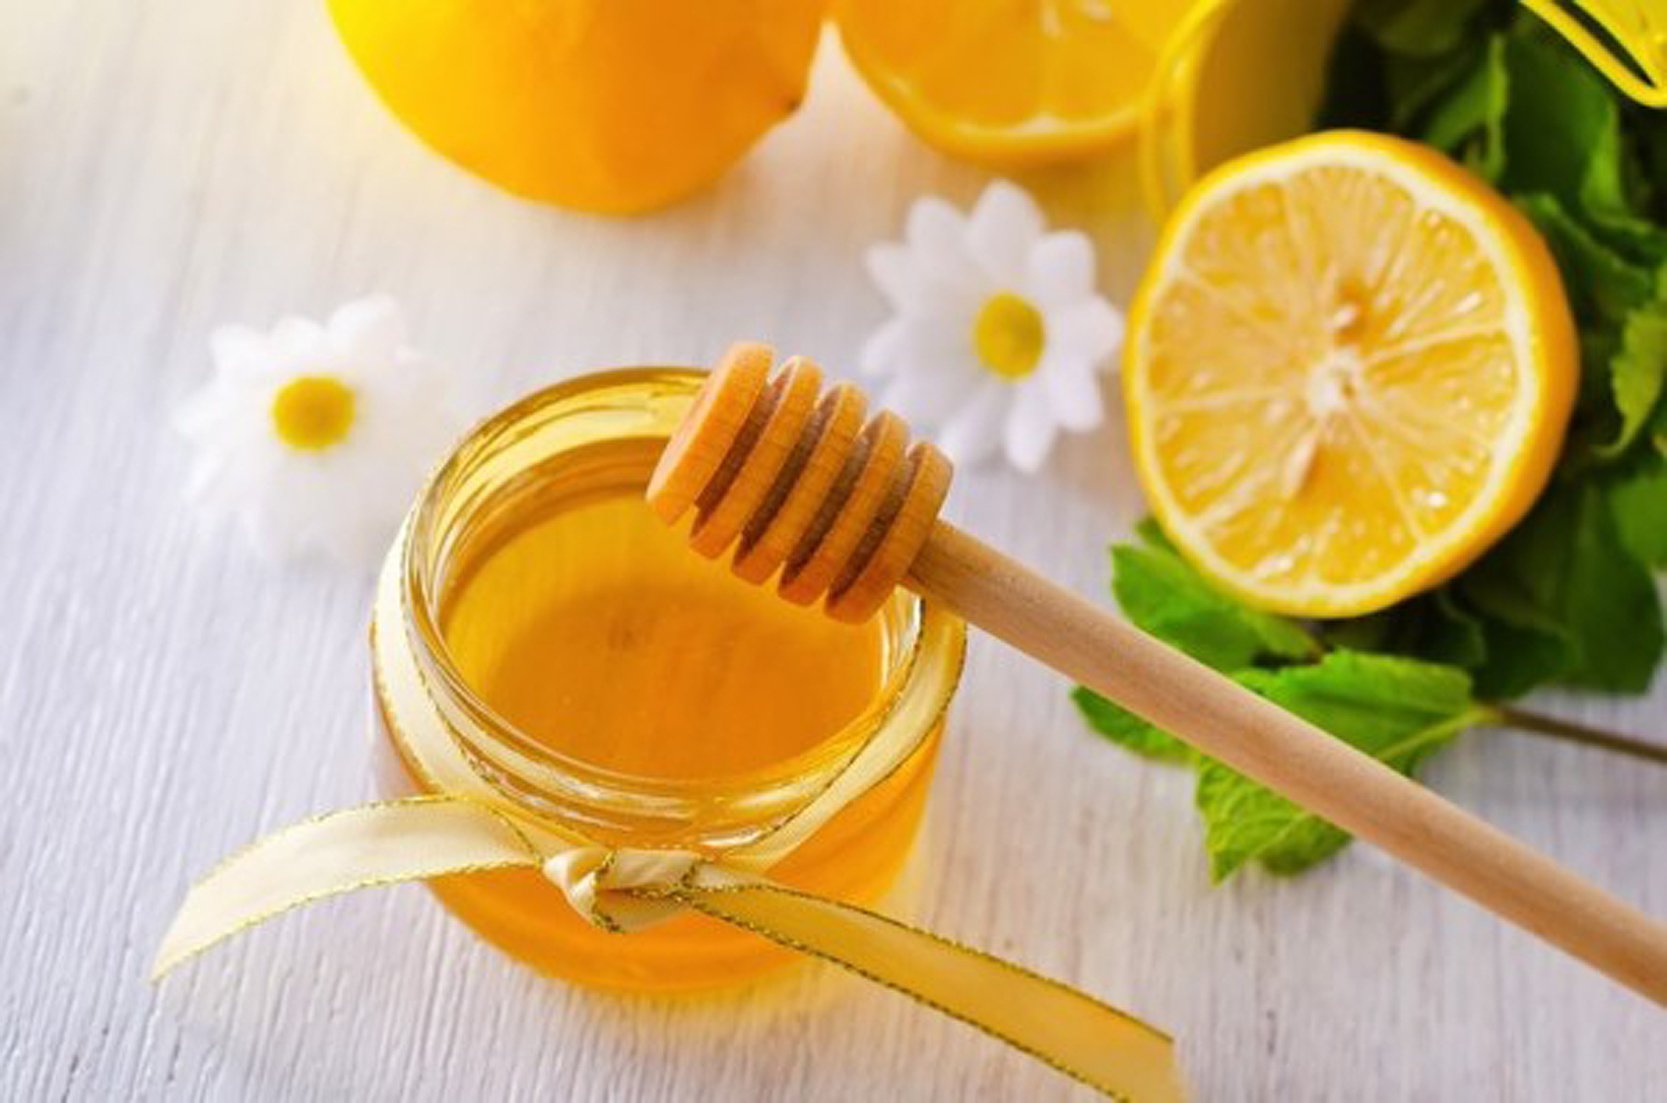 Nước chanh mật ong có tác dụng giảm cân hiệu quả.